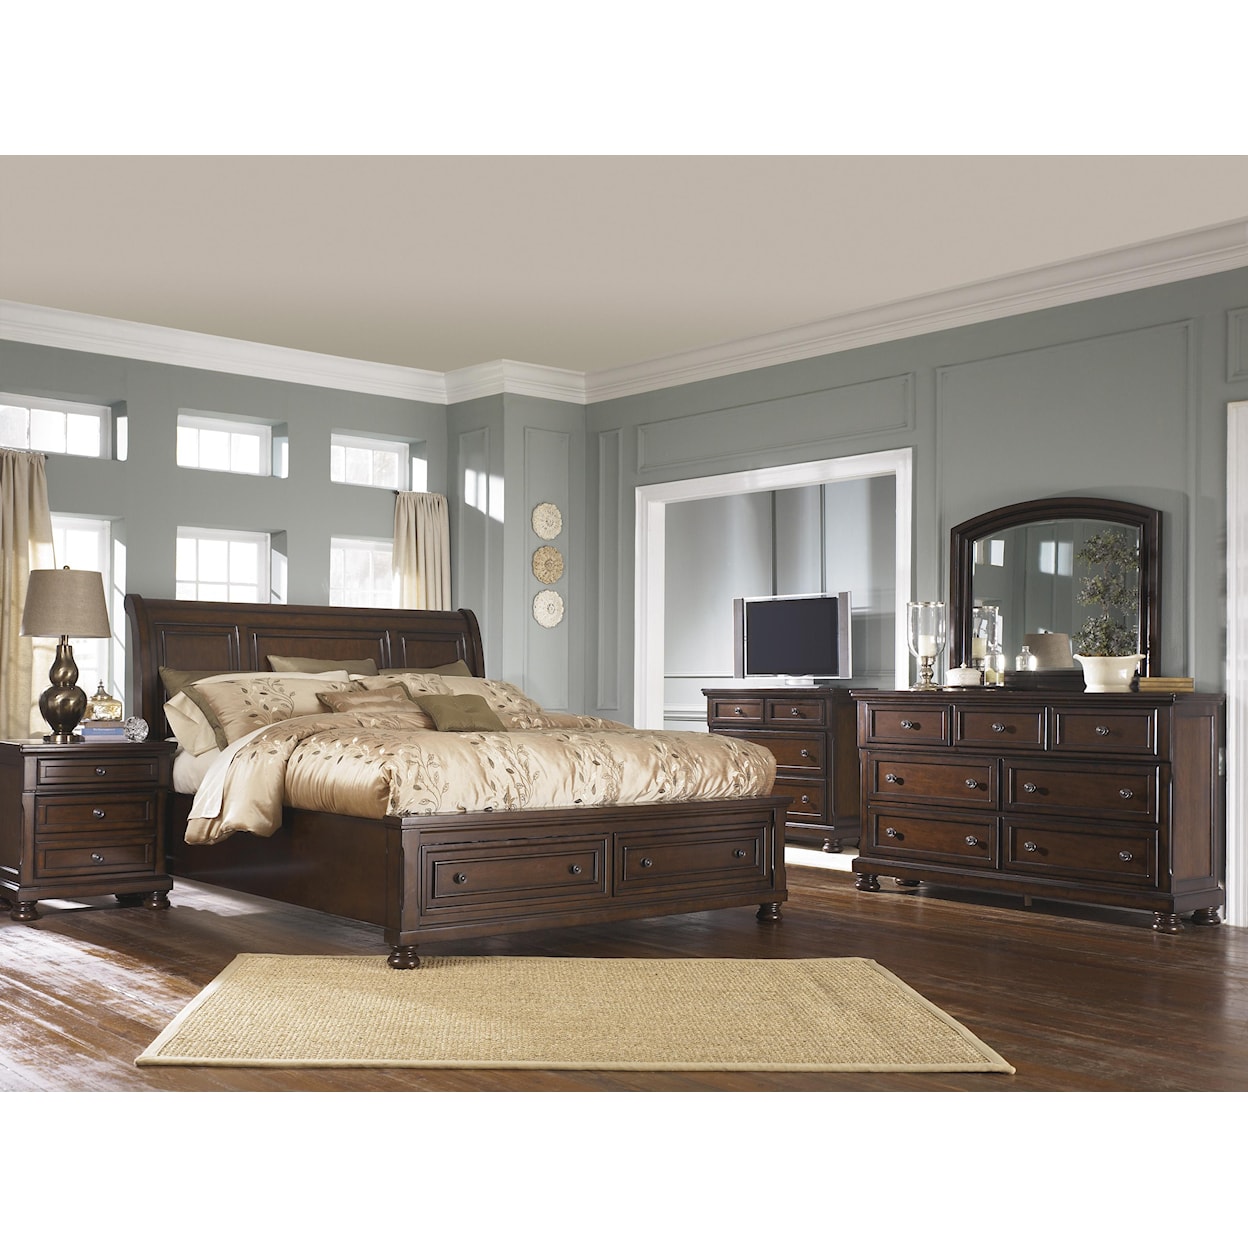 Ashley Furniture Porter King Bedroom Group